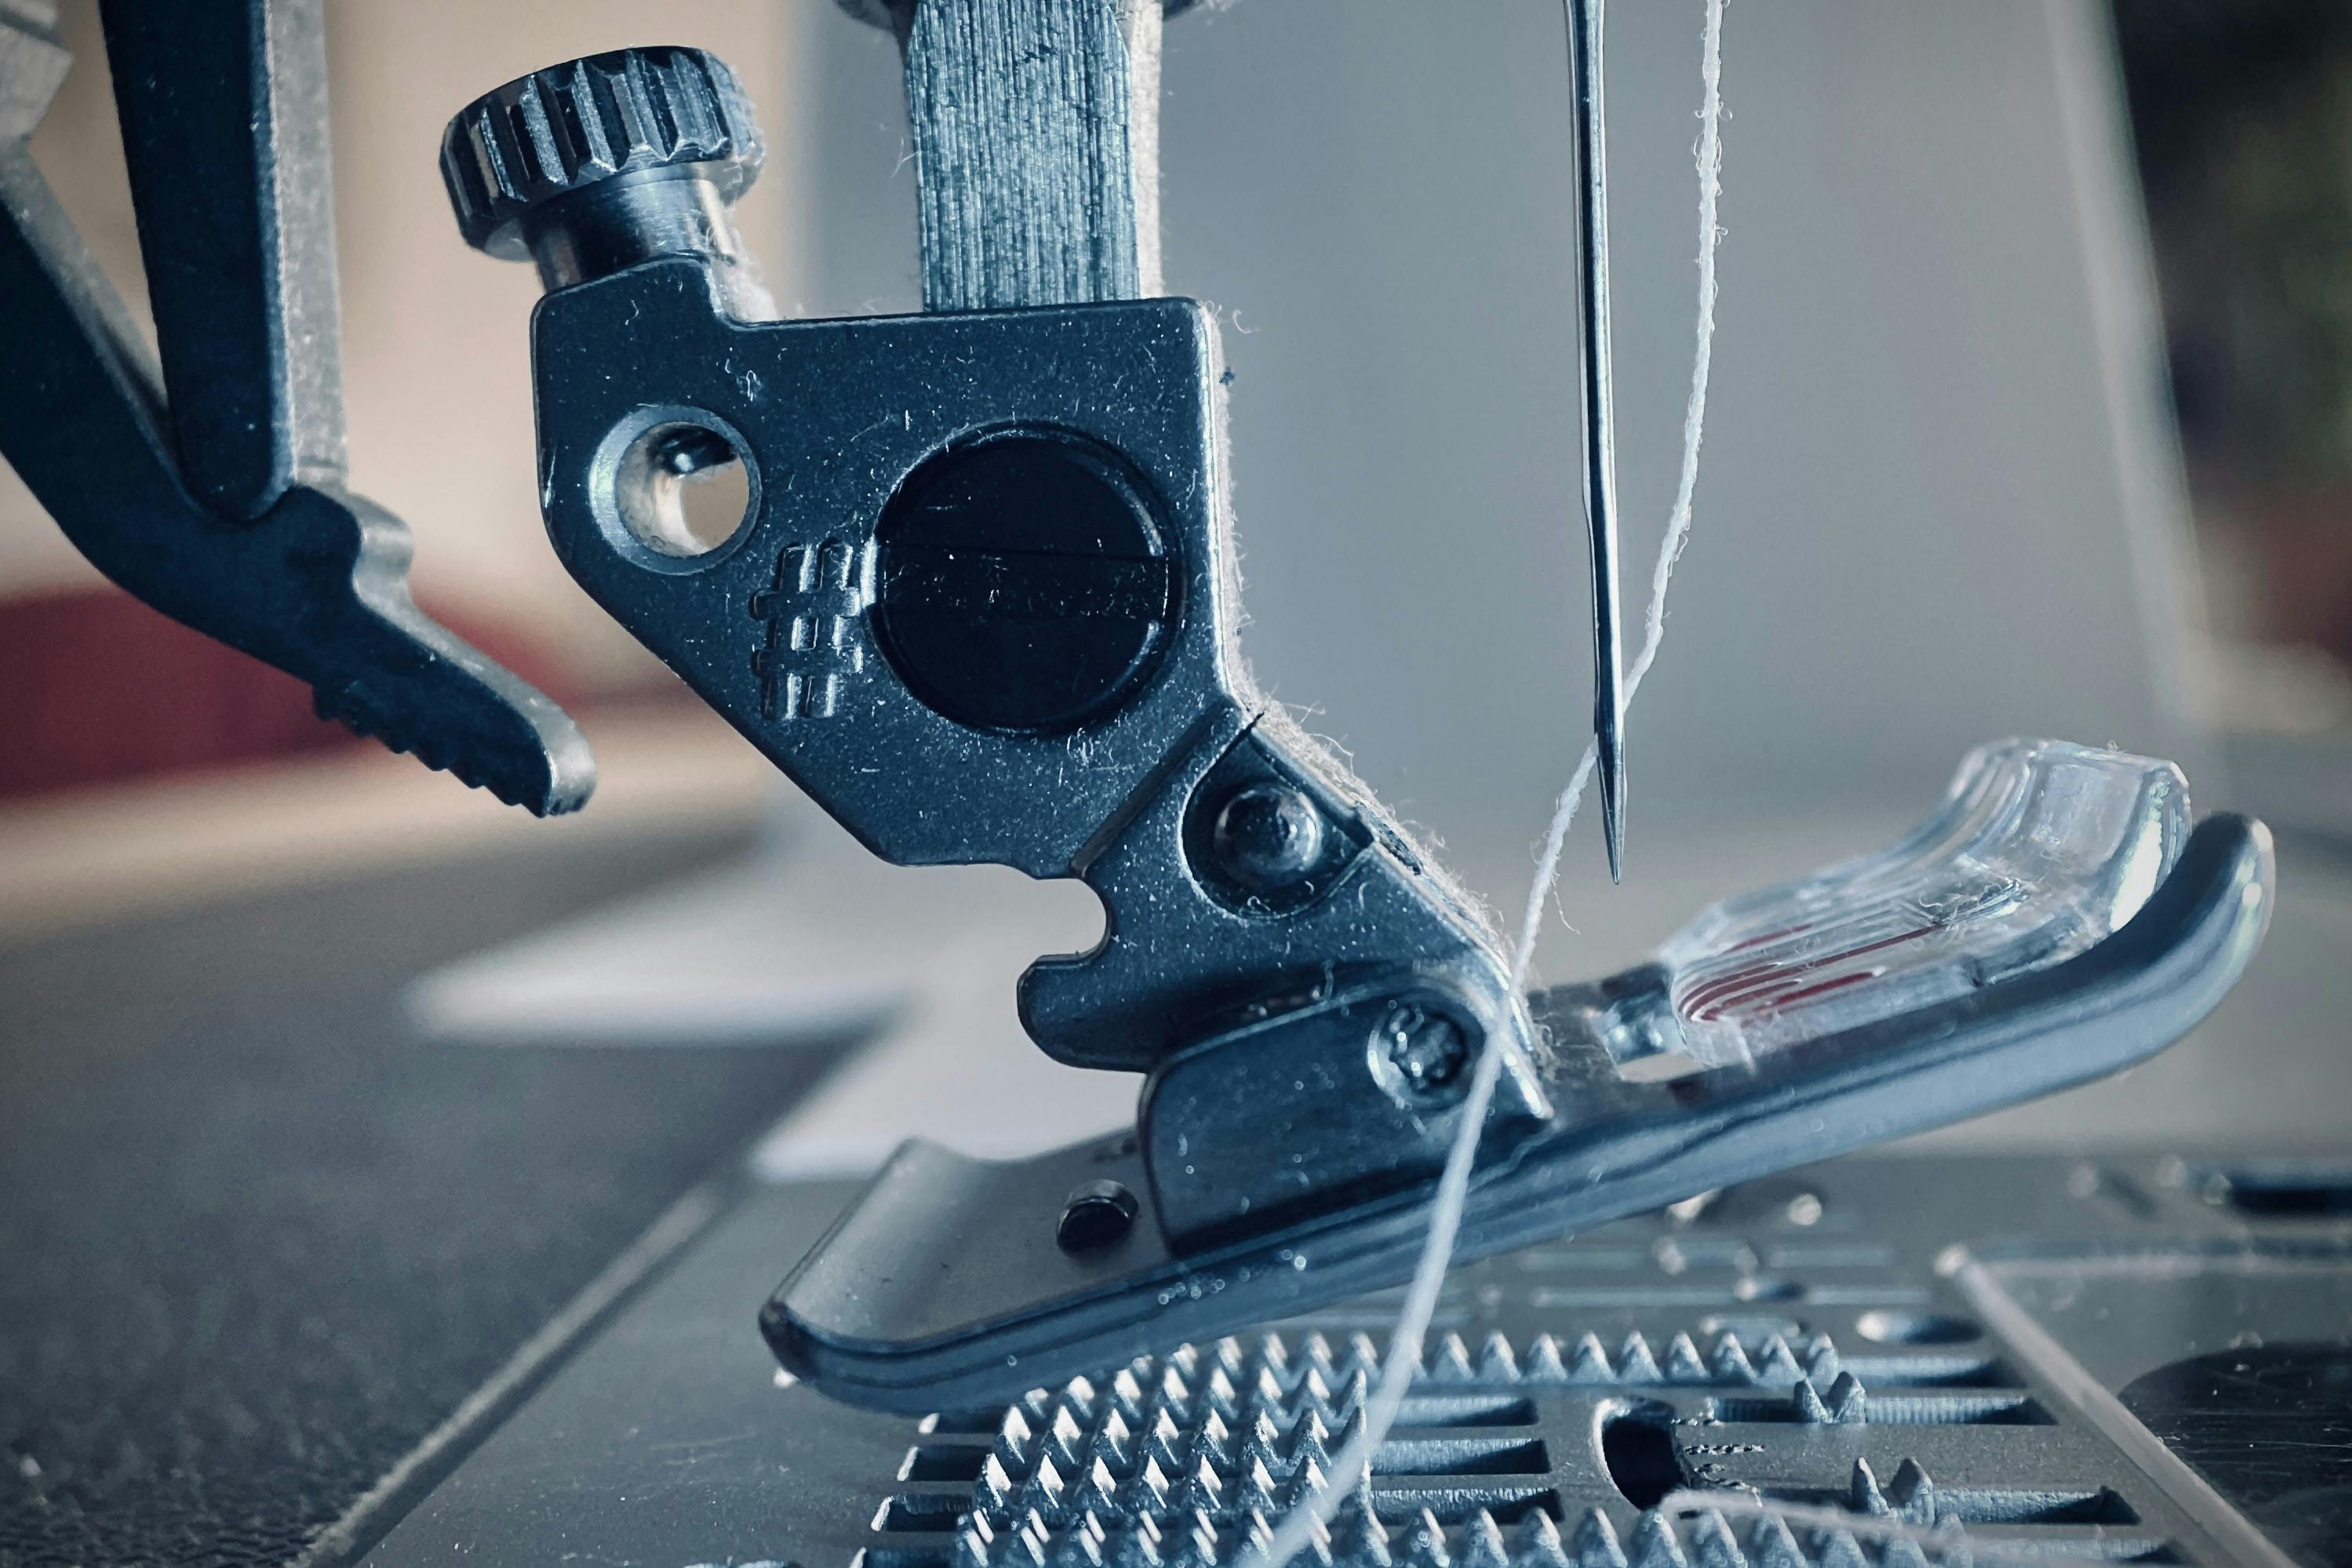  primer plano de la aguja de una máquina de coser